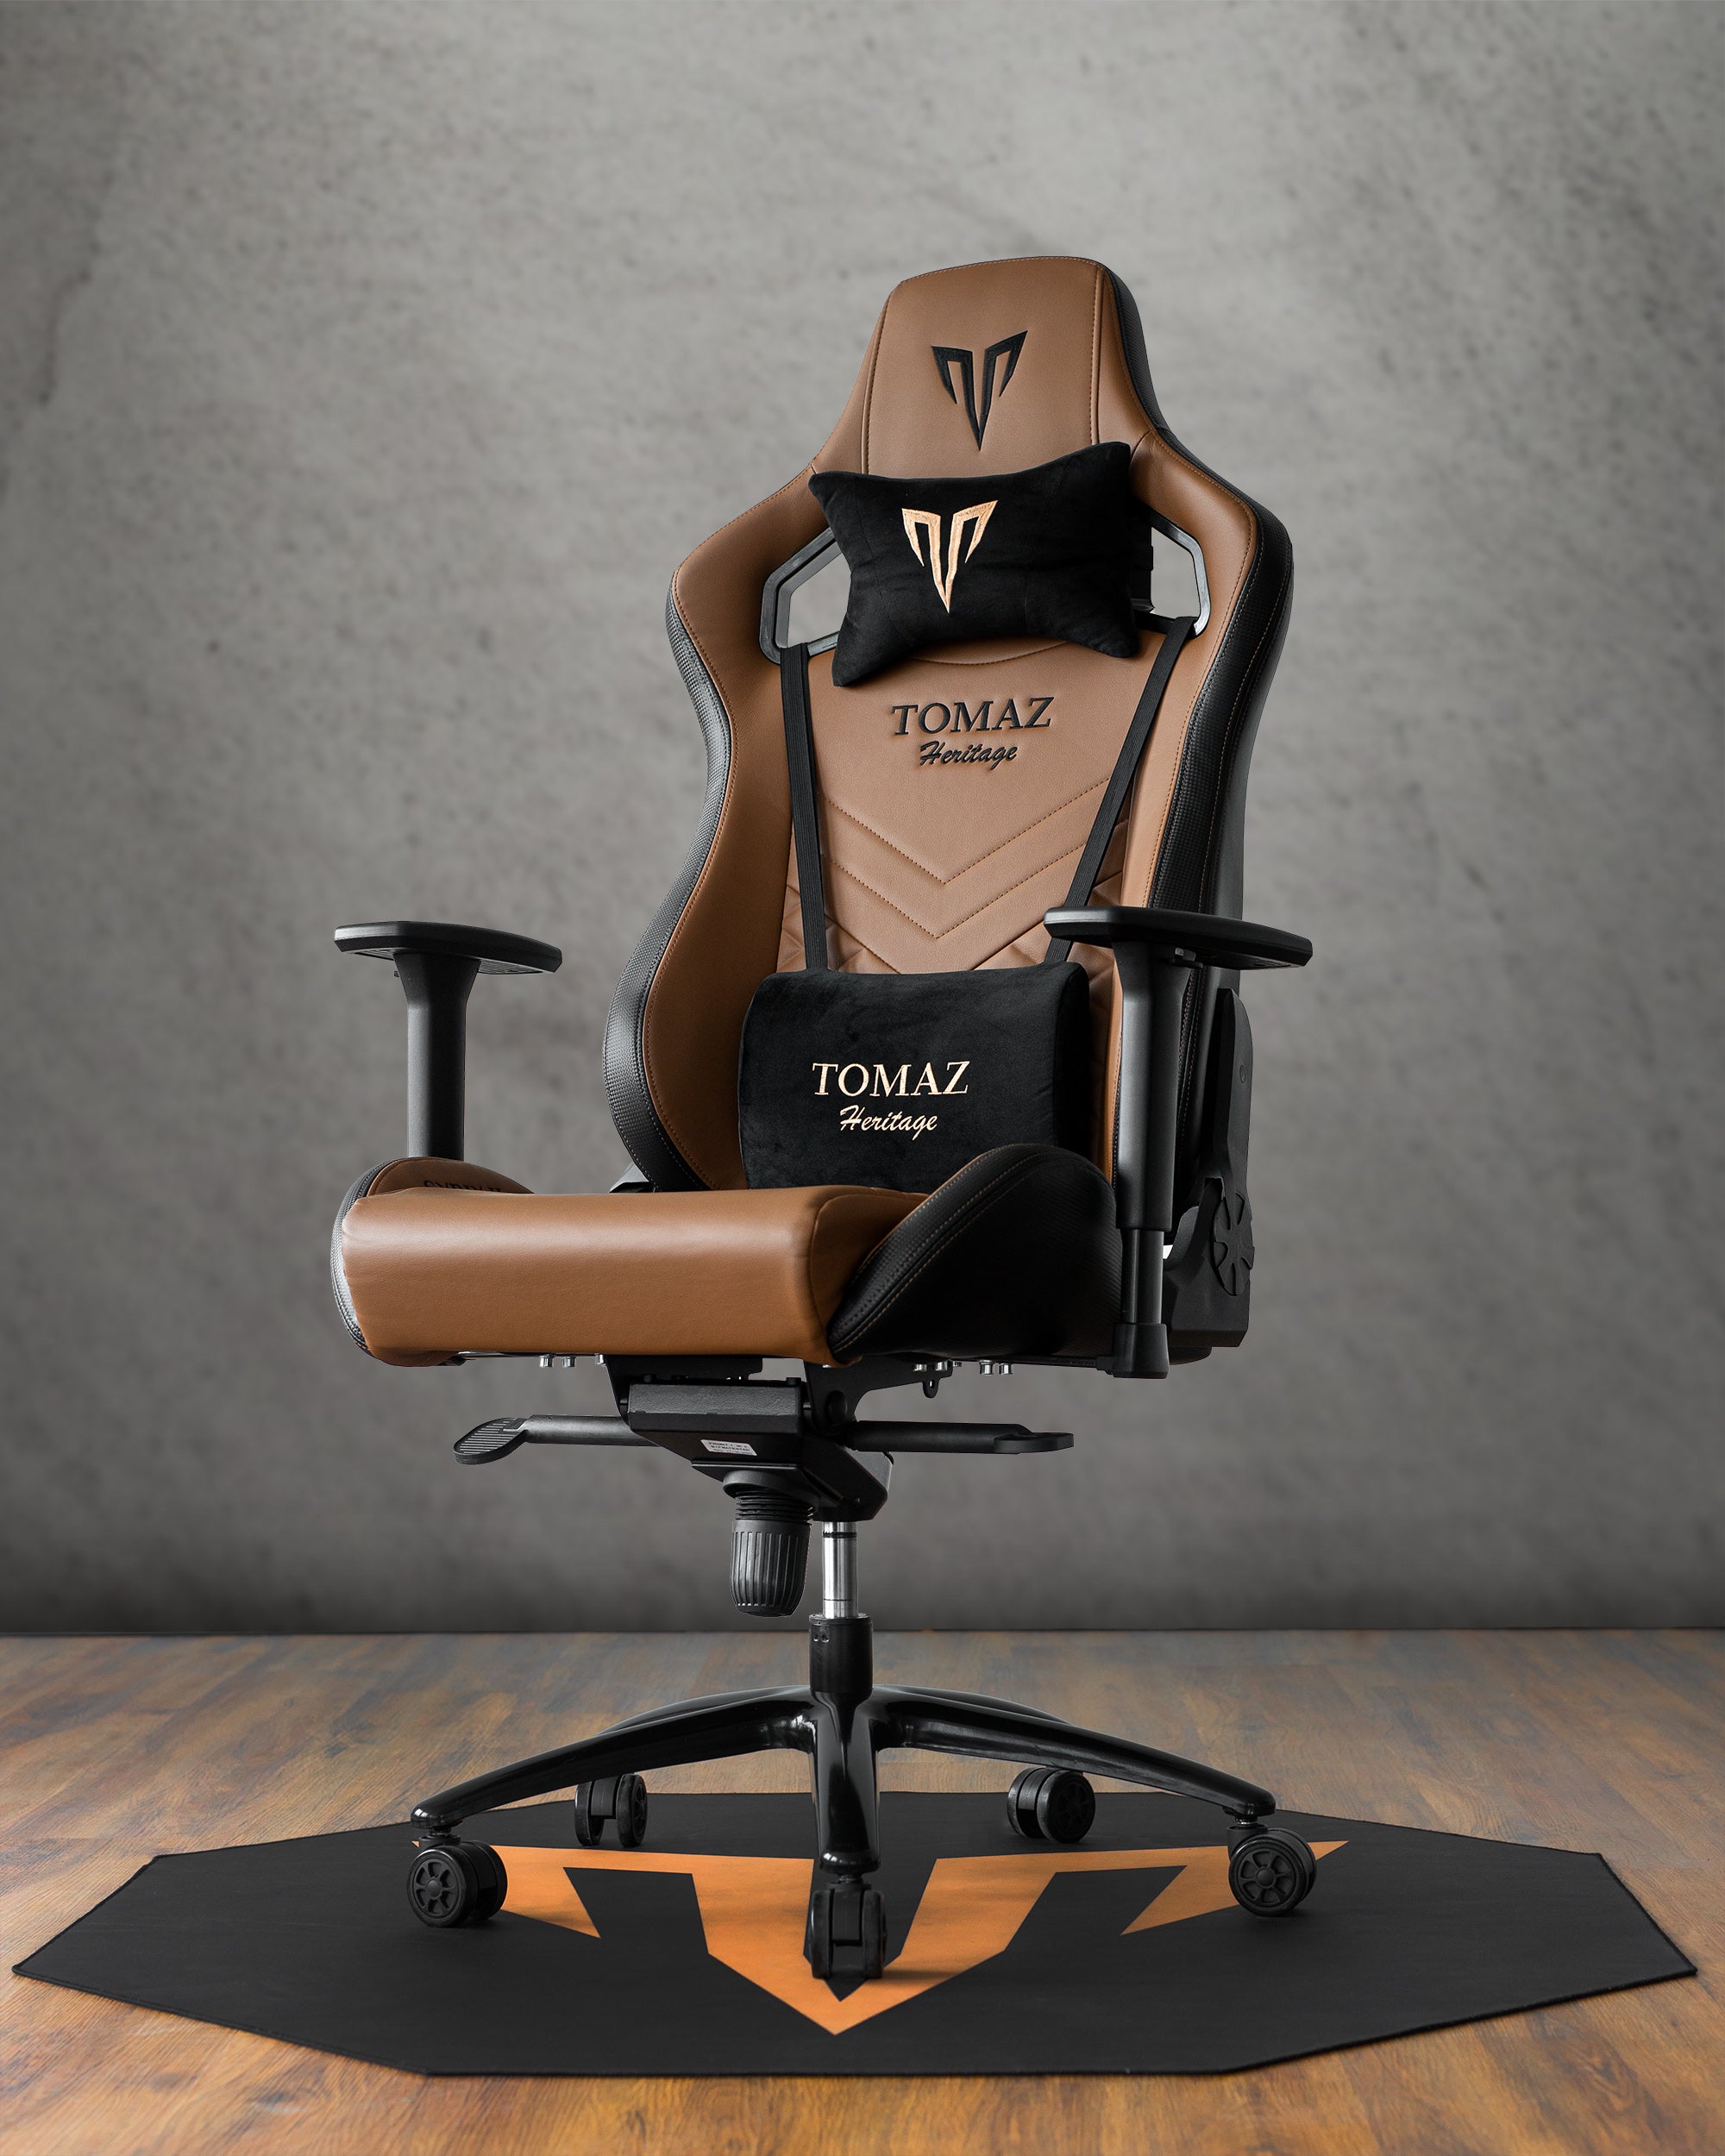 ZIOZ empire - Ready Stock Tomaz Gaming Chair: 1. Blaze X Pro 2